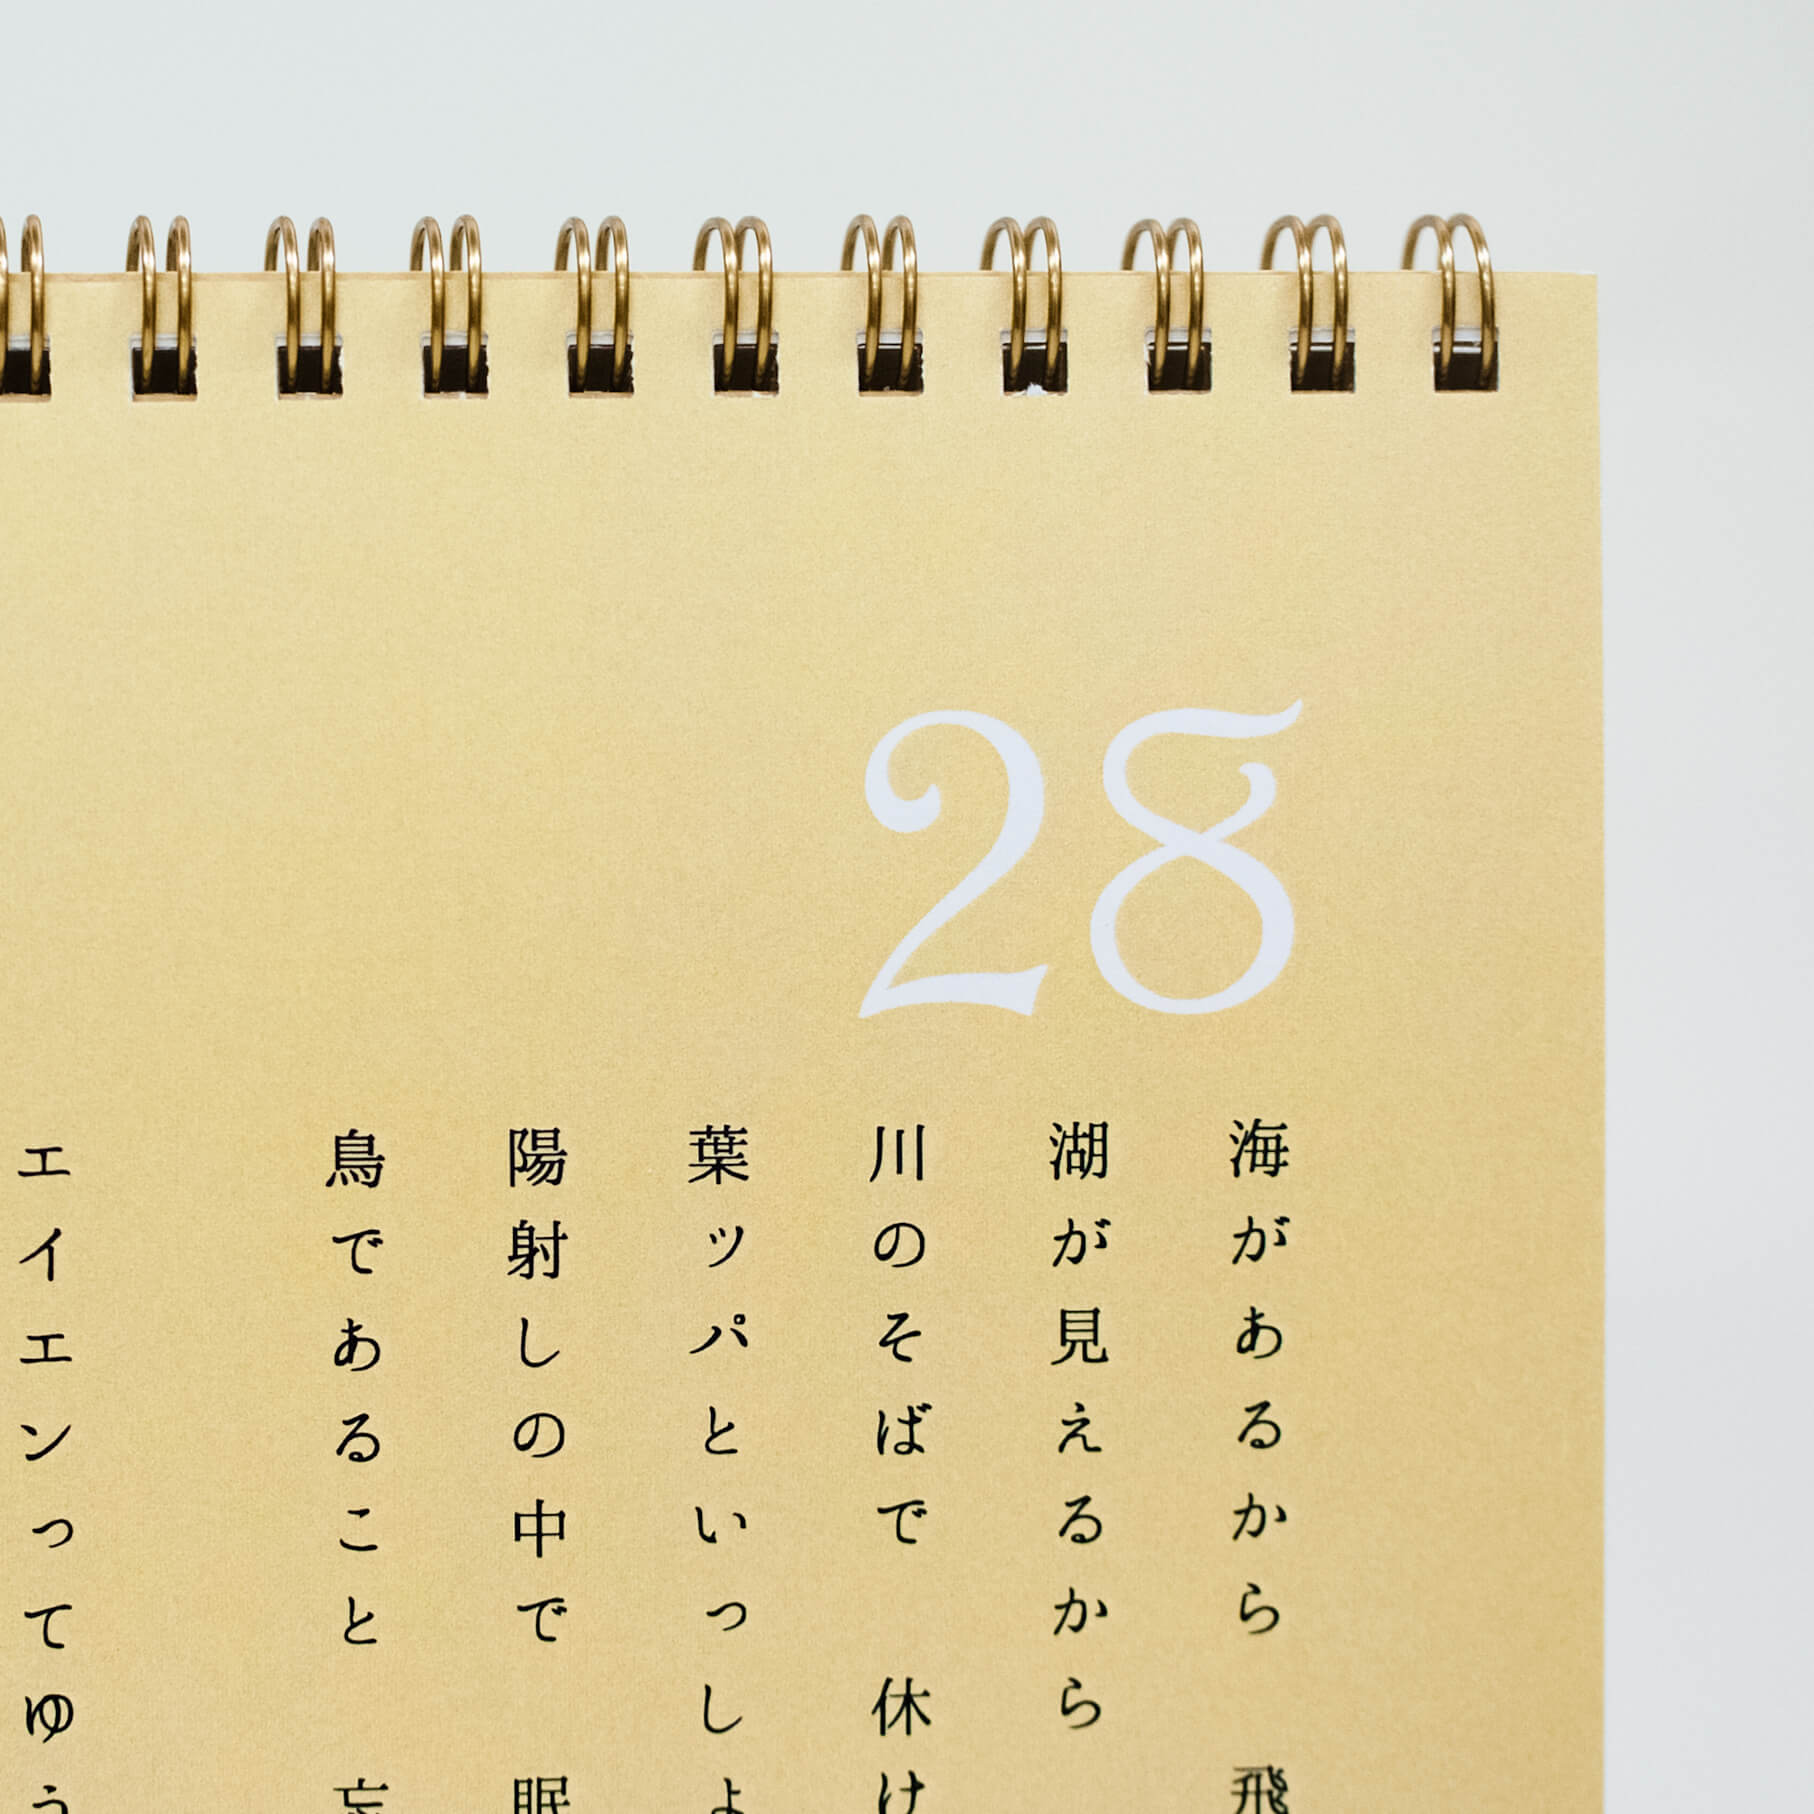 「藪亀  雅子 様」製作のオリジナルカレンダー ギャラリー写真2